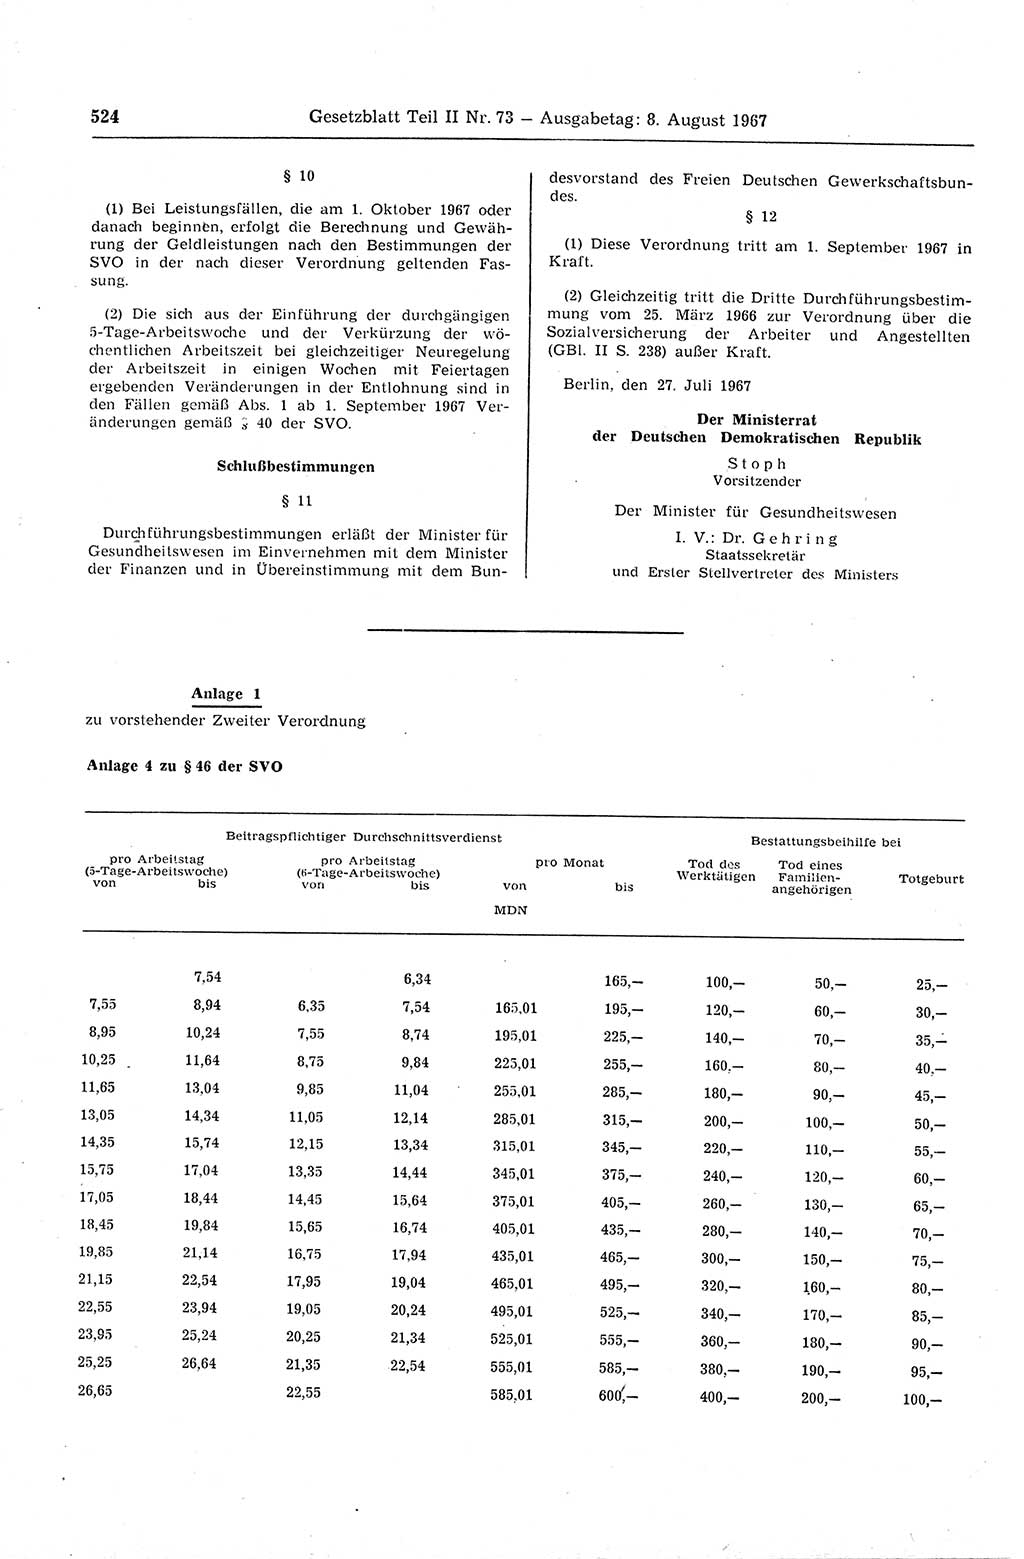 Gesetzblatt (GBl.) der Deutschen Demokratischen Republik (DDR) Teil ⅠⅠ 1967, Seite 524 (GBl. DDR ⅠⅠ 1967, S. 524)